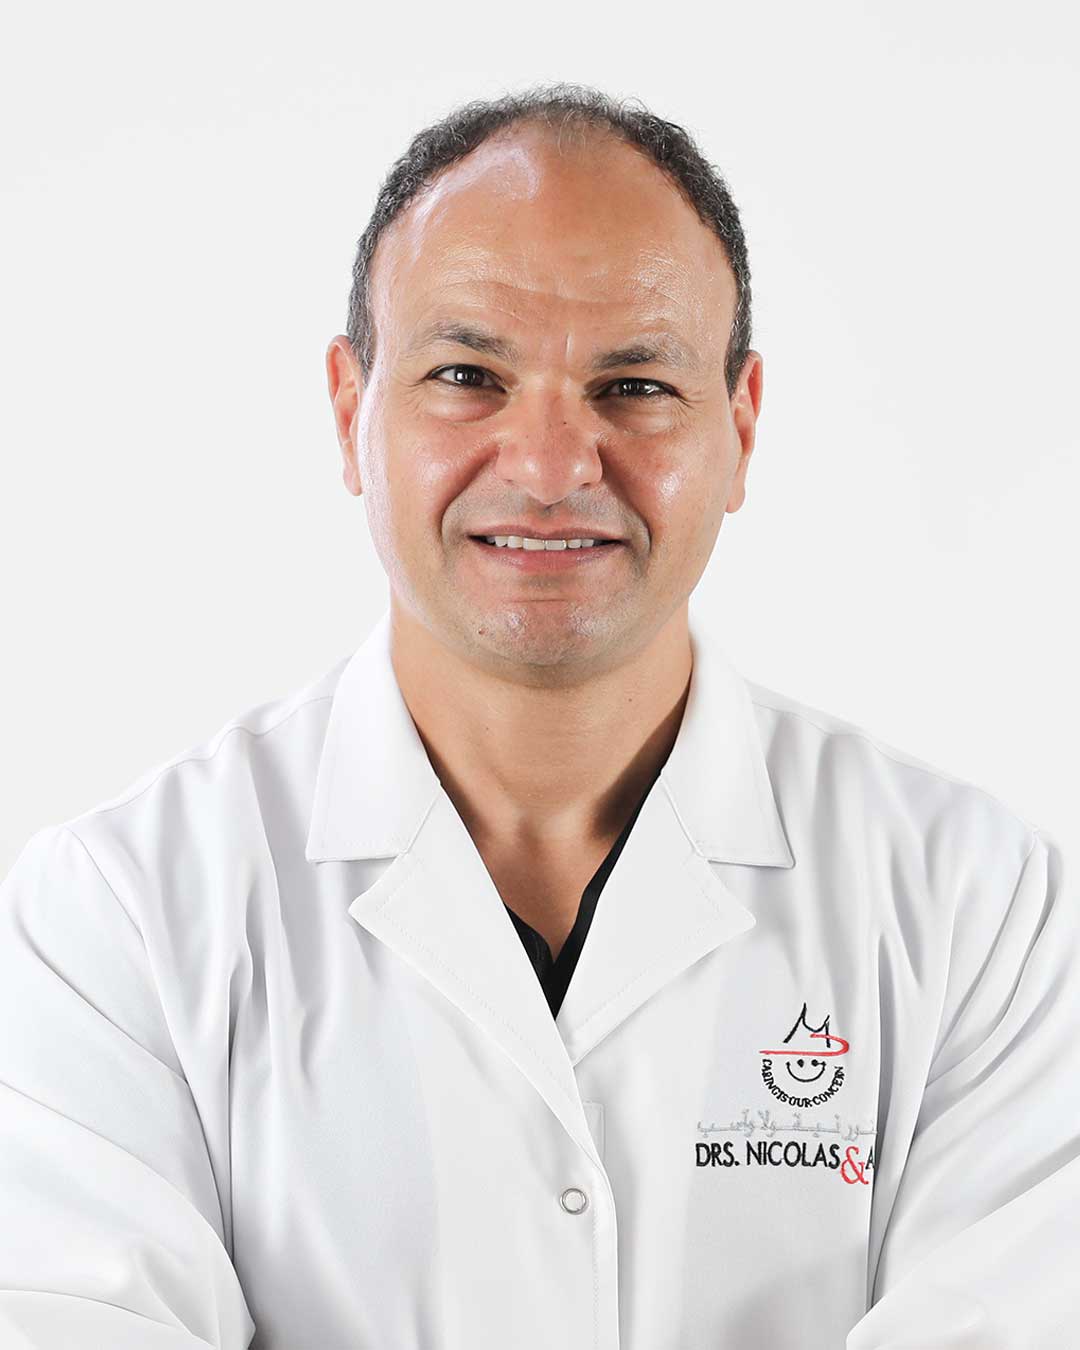 Dr. Johnny Elhelou